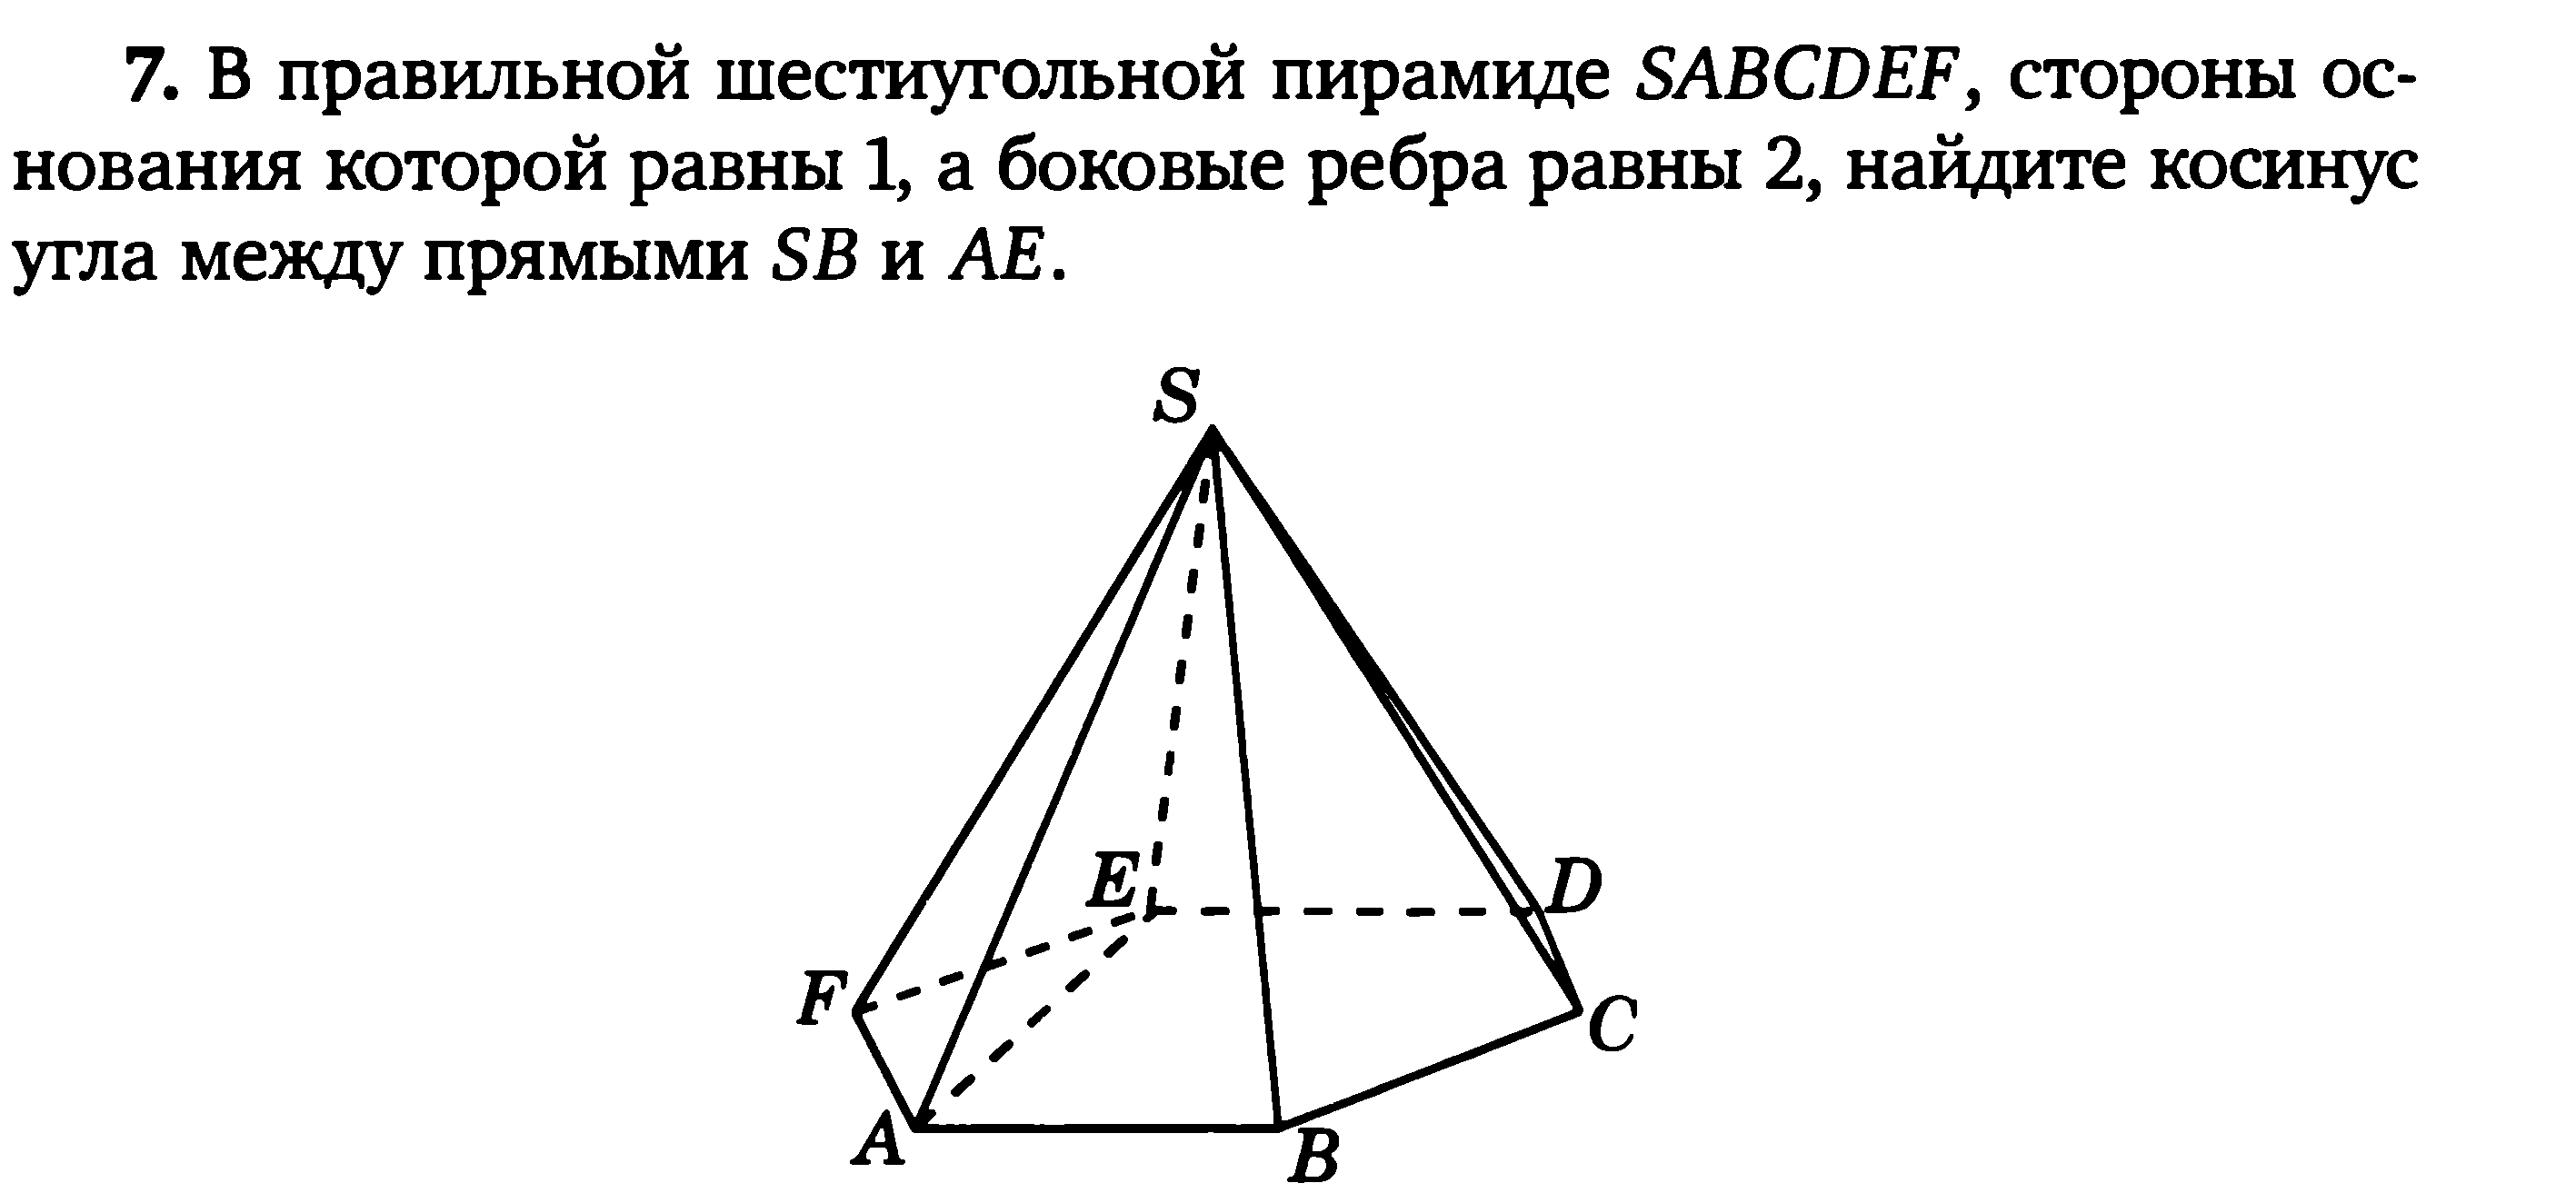 Скрещивающиеся ребра пирамиды. Угол между прямыми в шестиугольной пирамиде. Правильная шестиугольная пирамида SABCDEF. Правильная 6 угольная пирамида. Стороны основания правильной шестиугольной пирамиды равны 10.